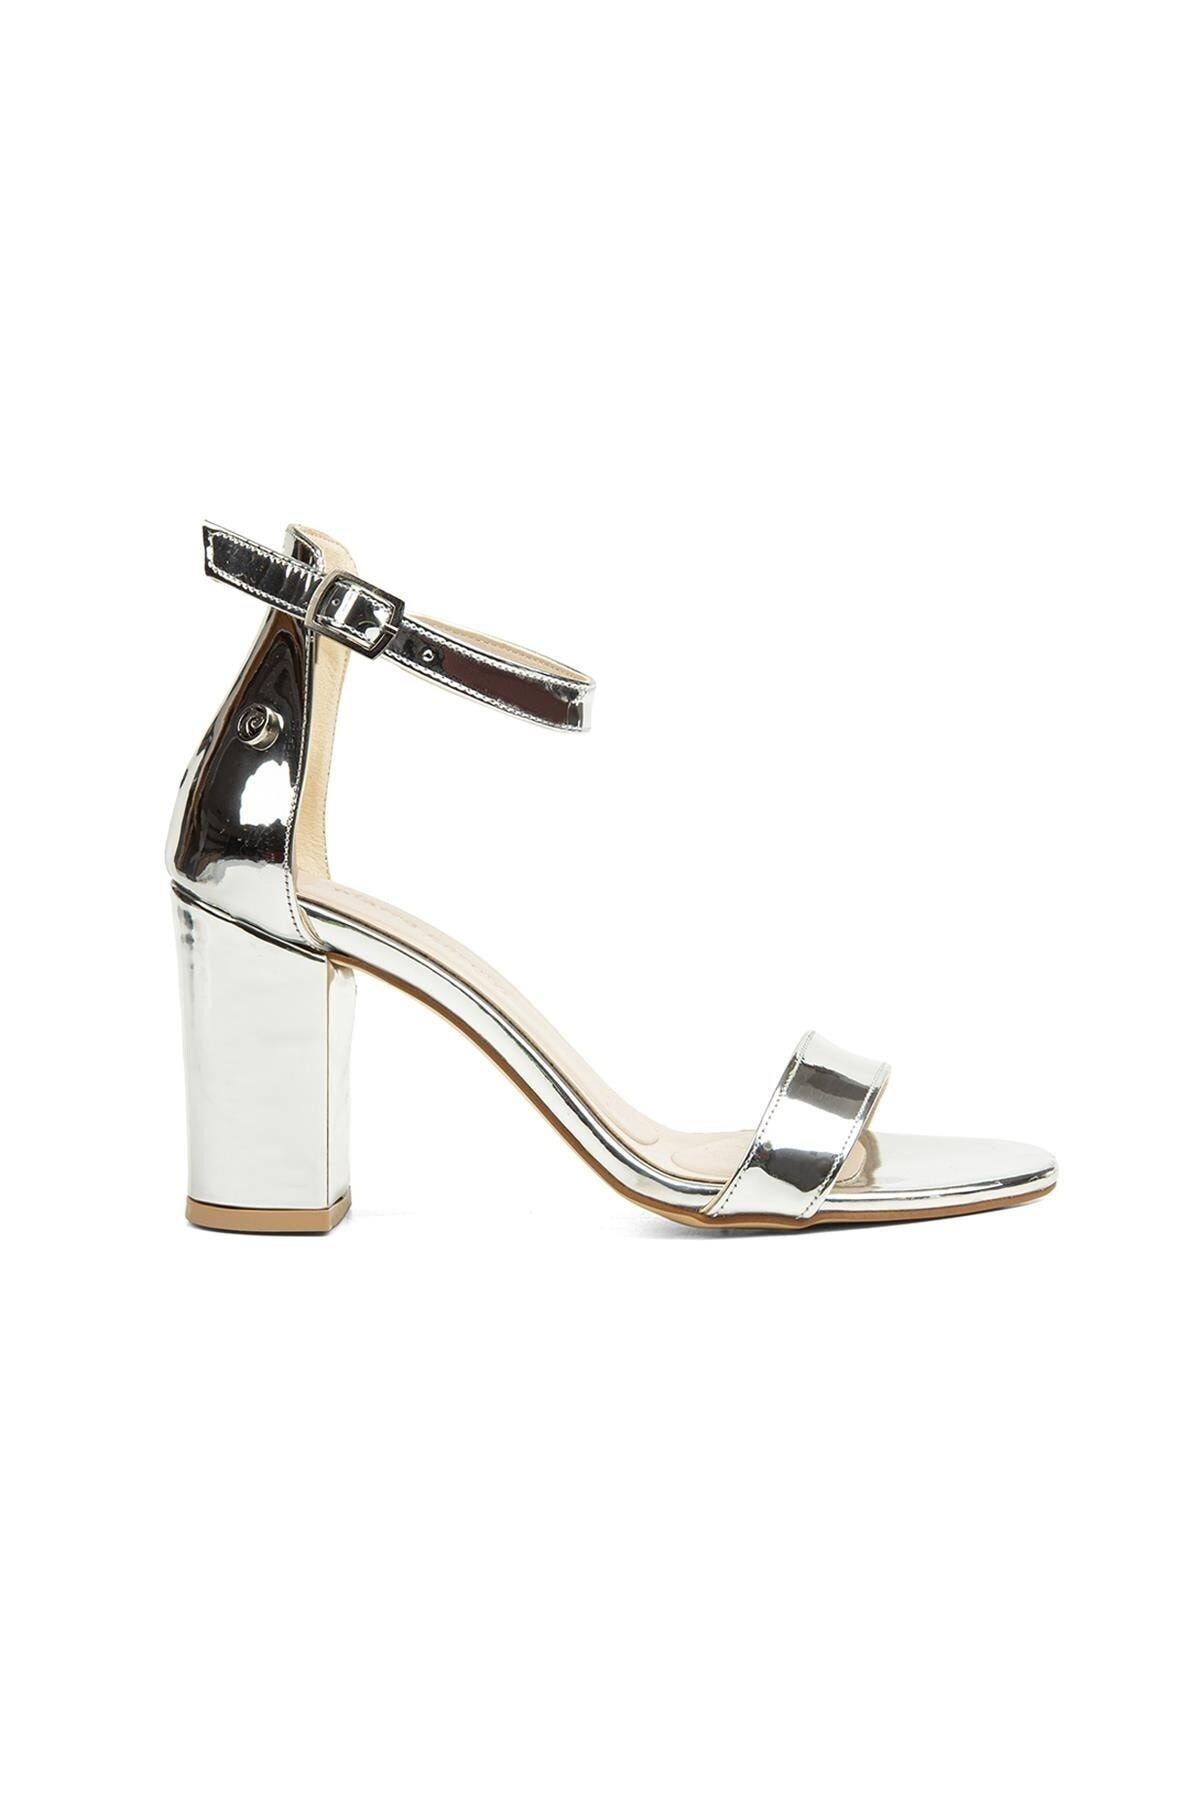 Pierre Cardin Bilek Bağcıklı Bantlı Gümüş - Kadın Topuklu Ayakkabı